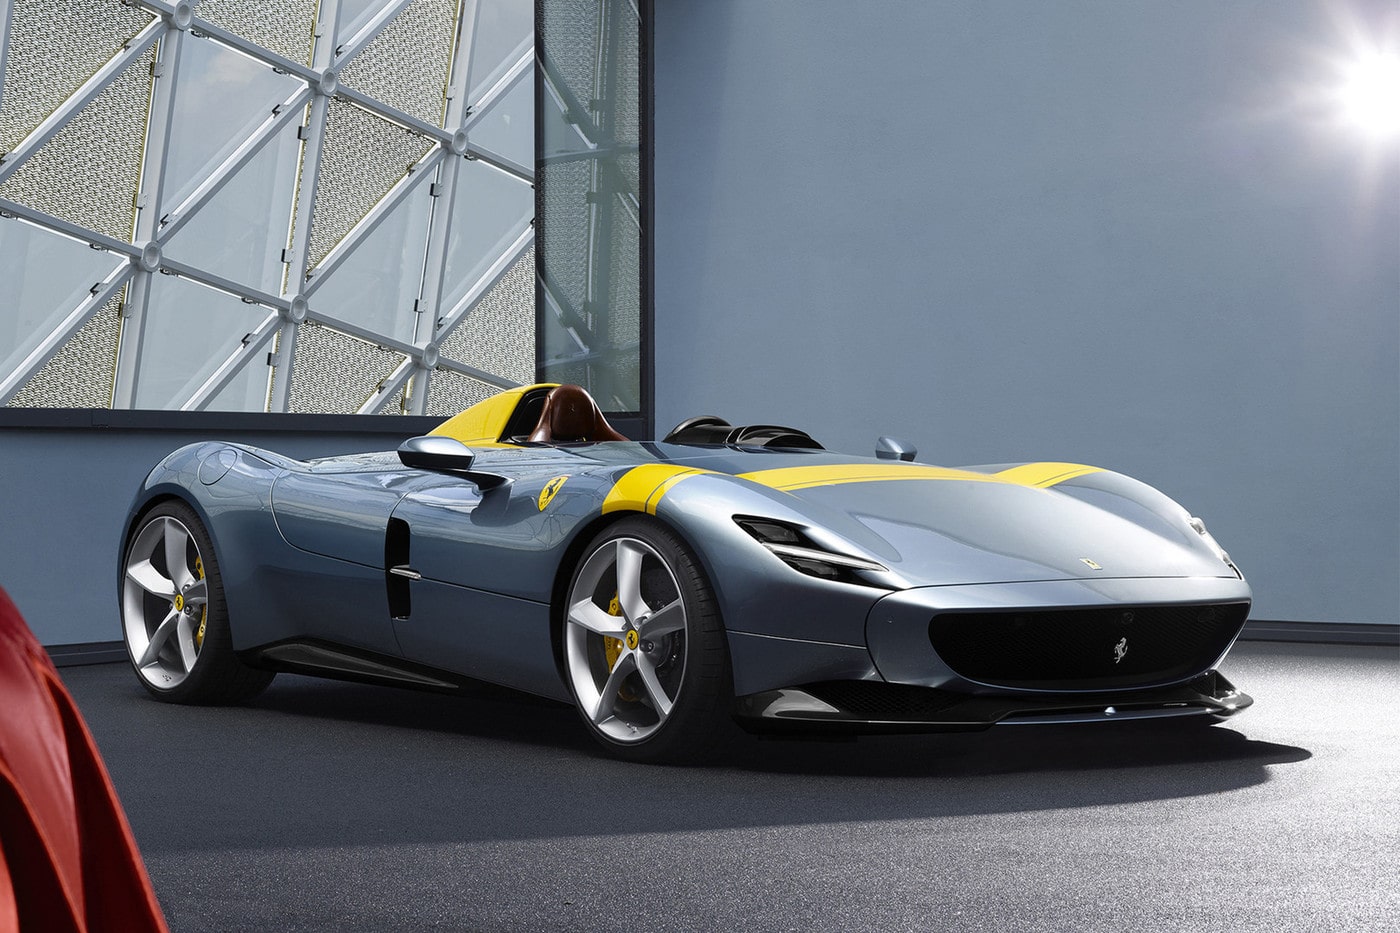 Ferrari Monza SP1 mooiste auto ter wereld volgens gulden snede